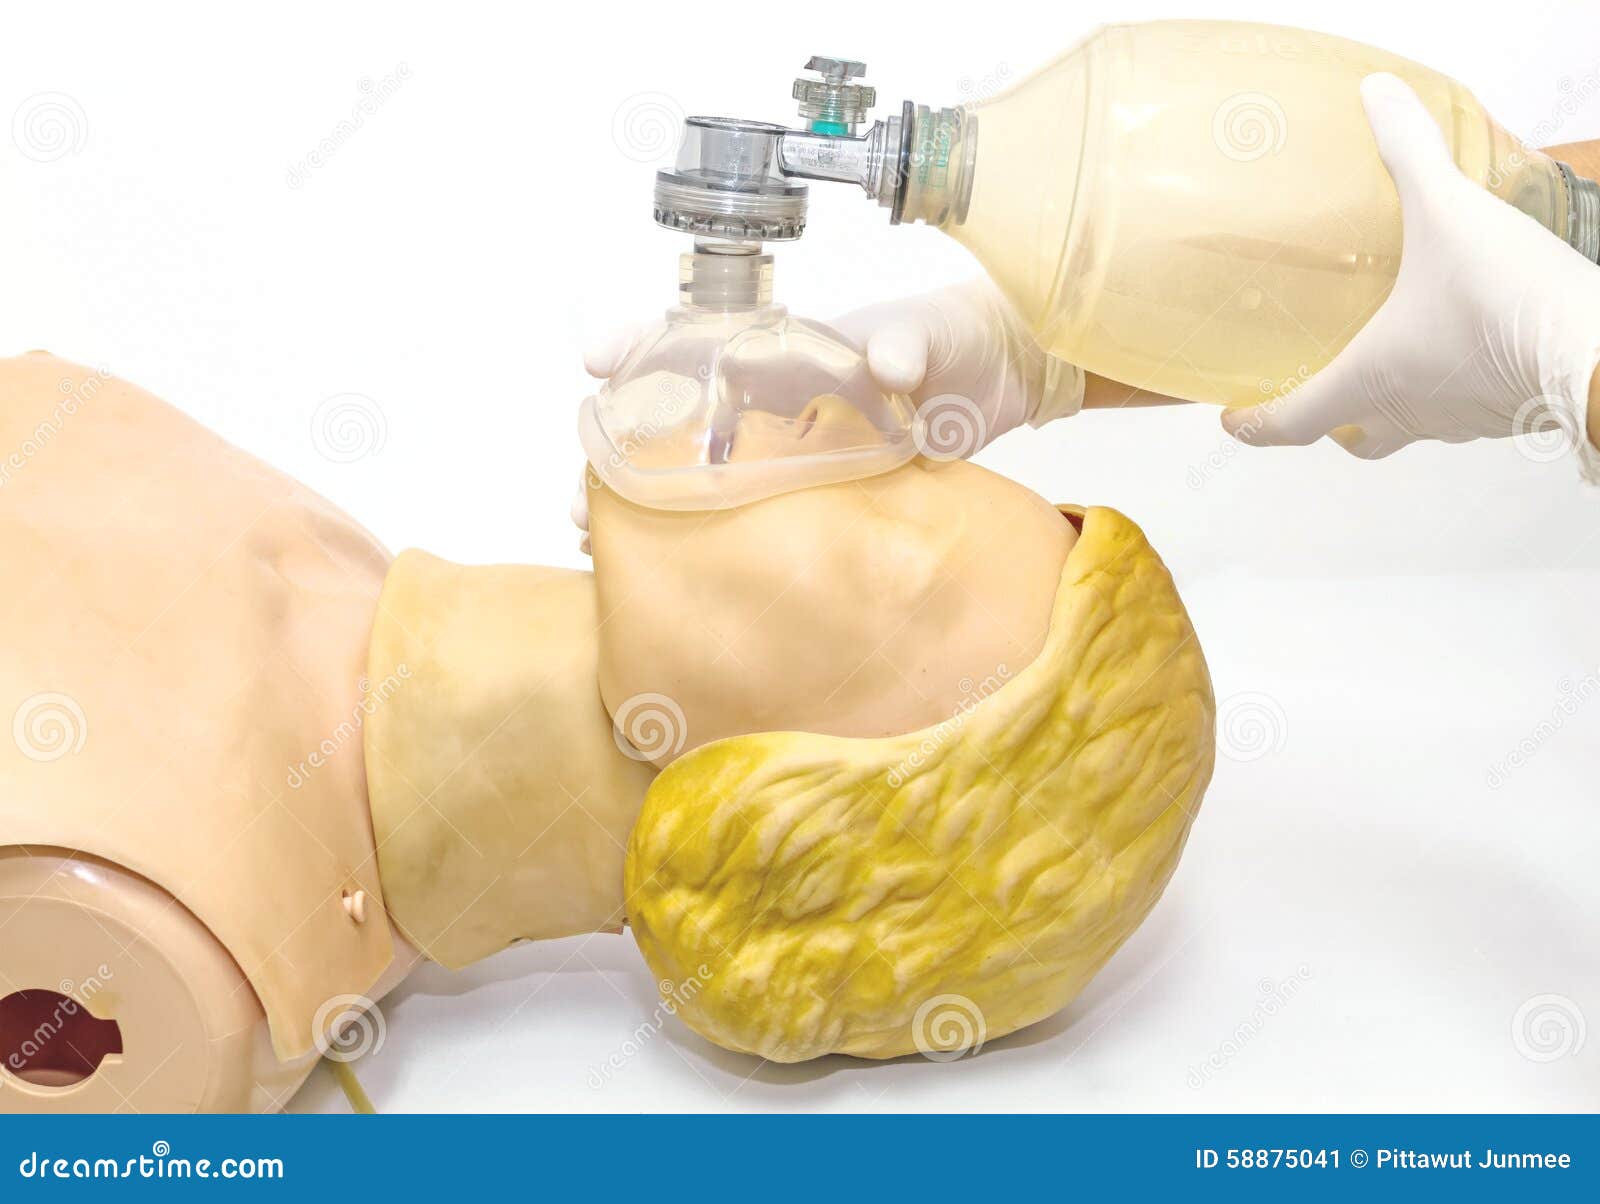 Infant Disposable Resuscitator